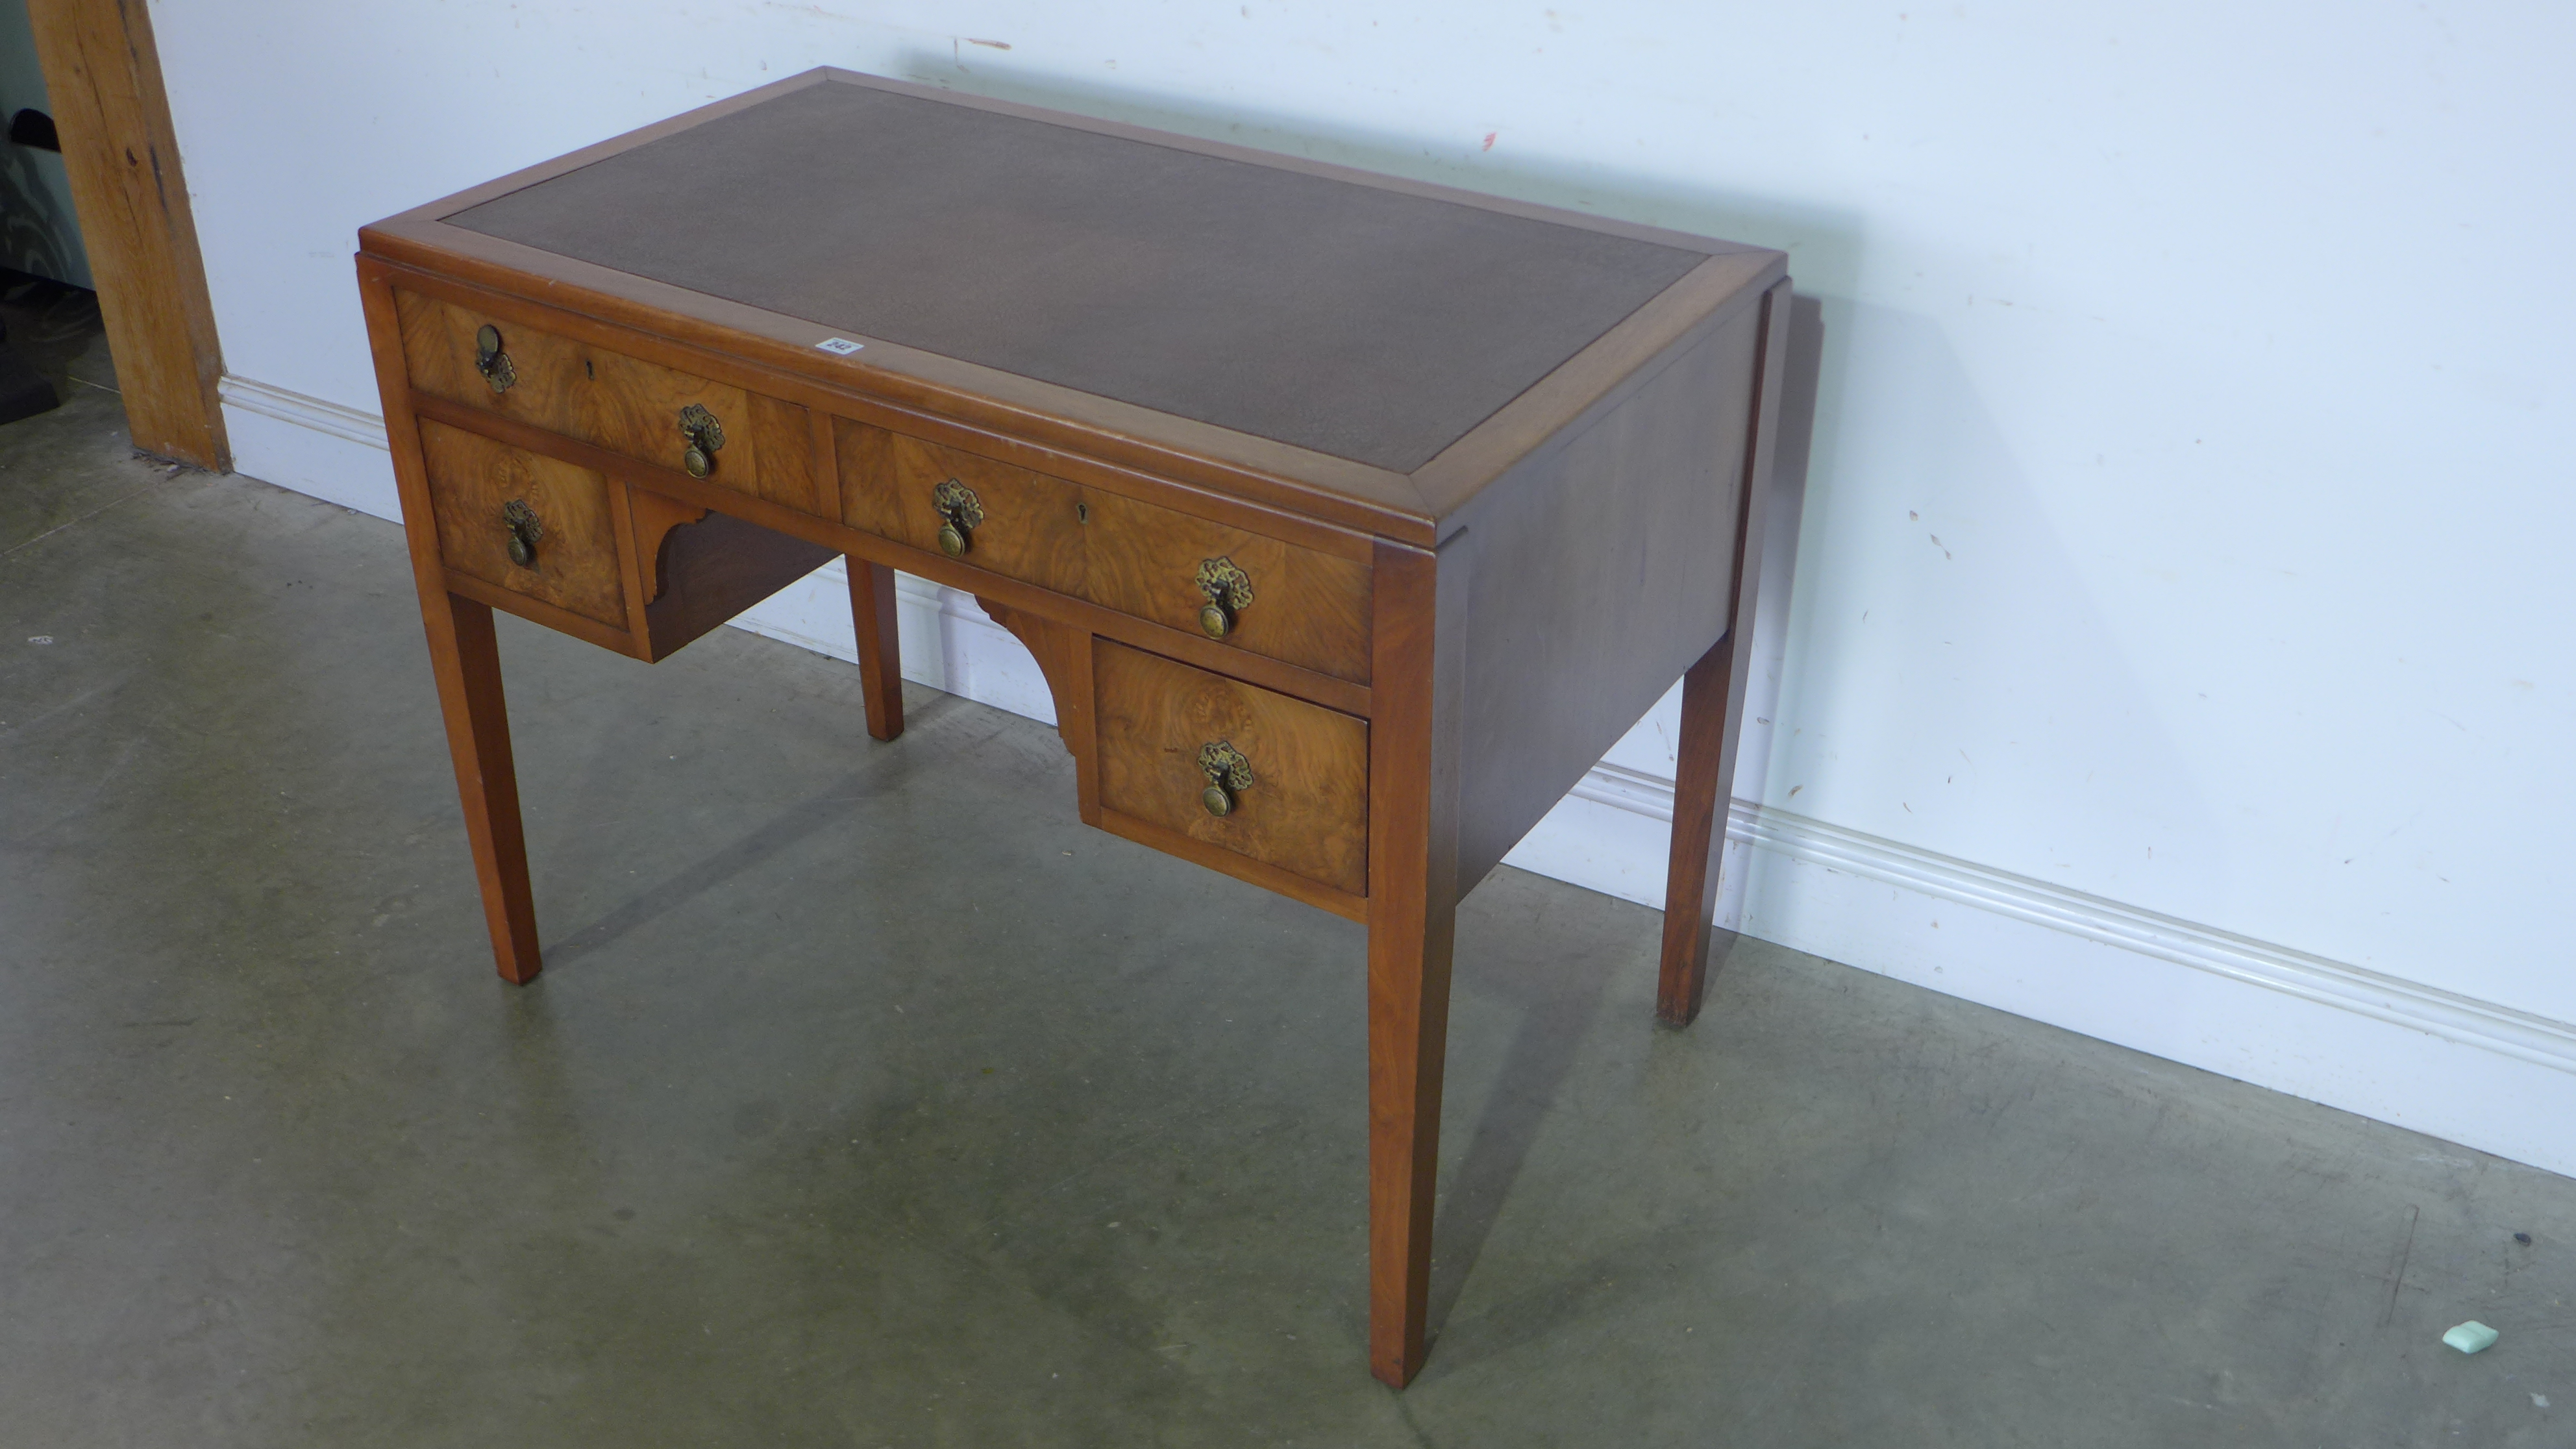 A 1930's walnut desk with five drawers - 79cm x 106cm x 60cm